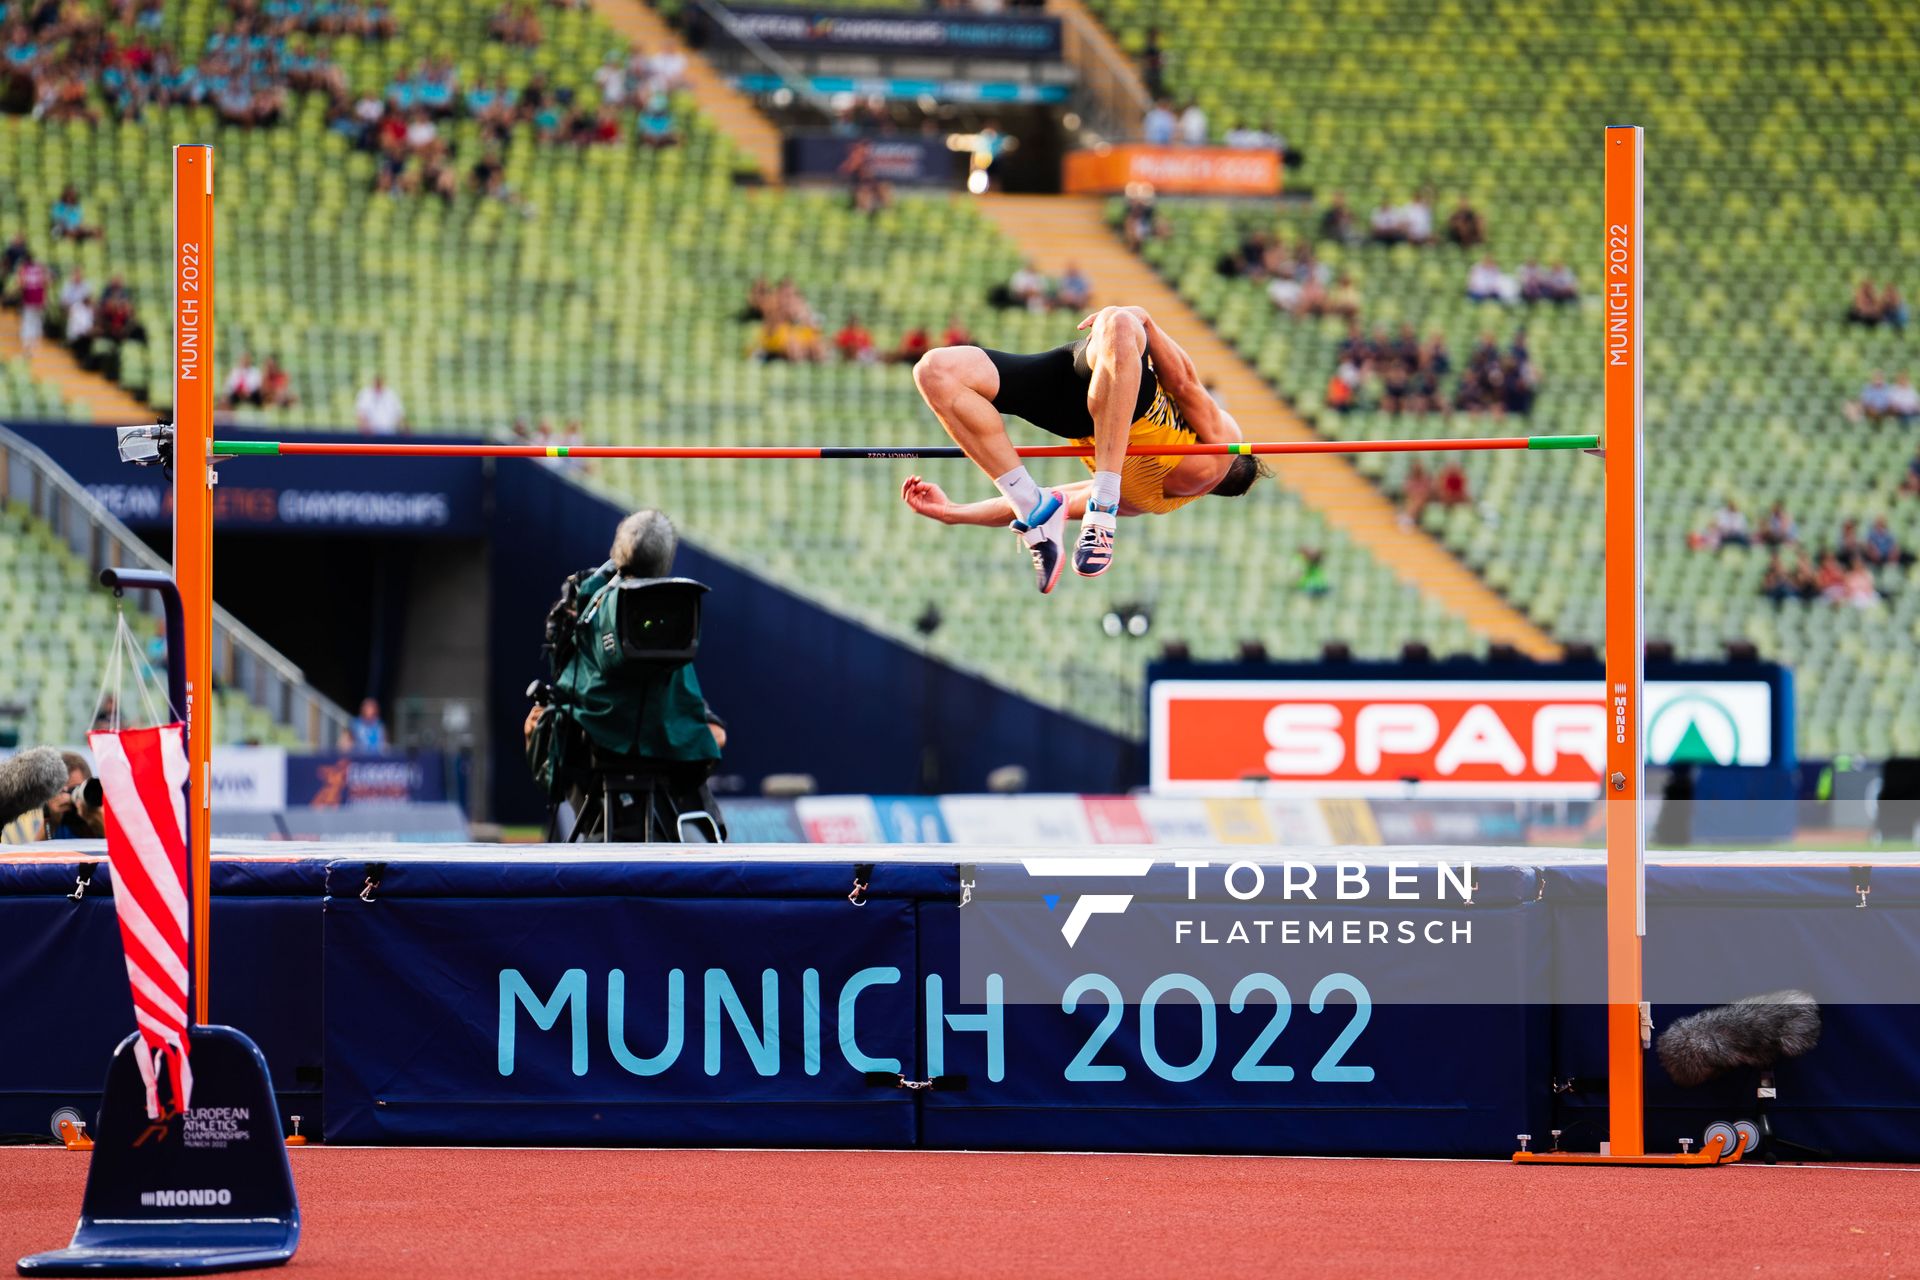 Kai Kazmirek (GER) beim Hochsprung am 15.08.2022 bei den Leichtathletik-Europameisterschaften in Muenchen